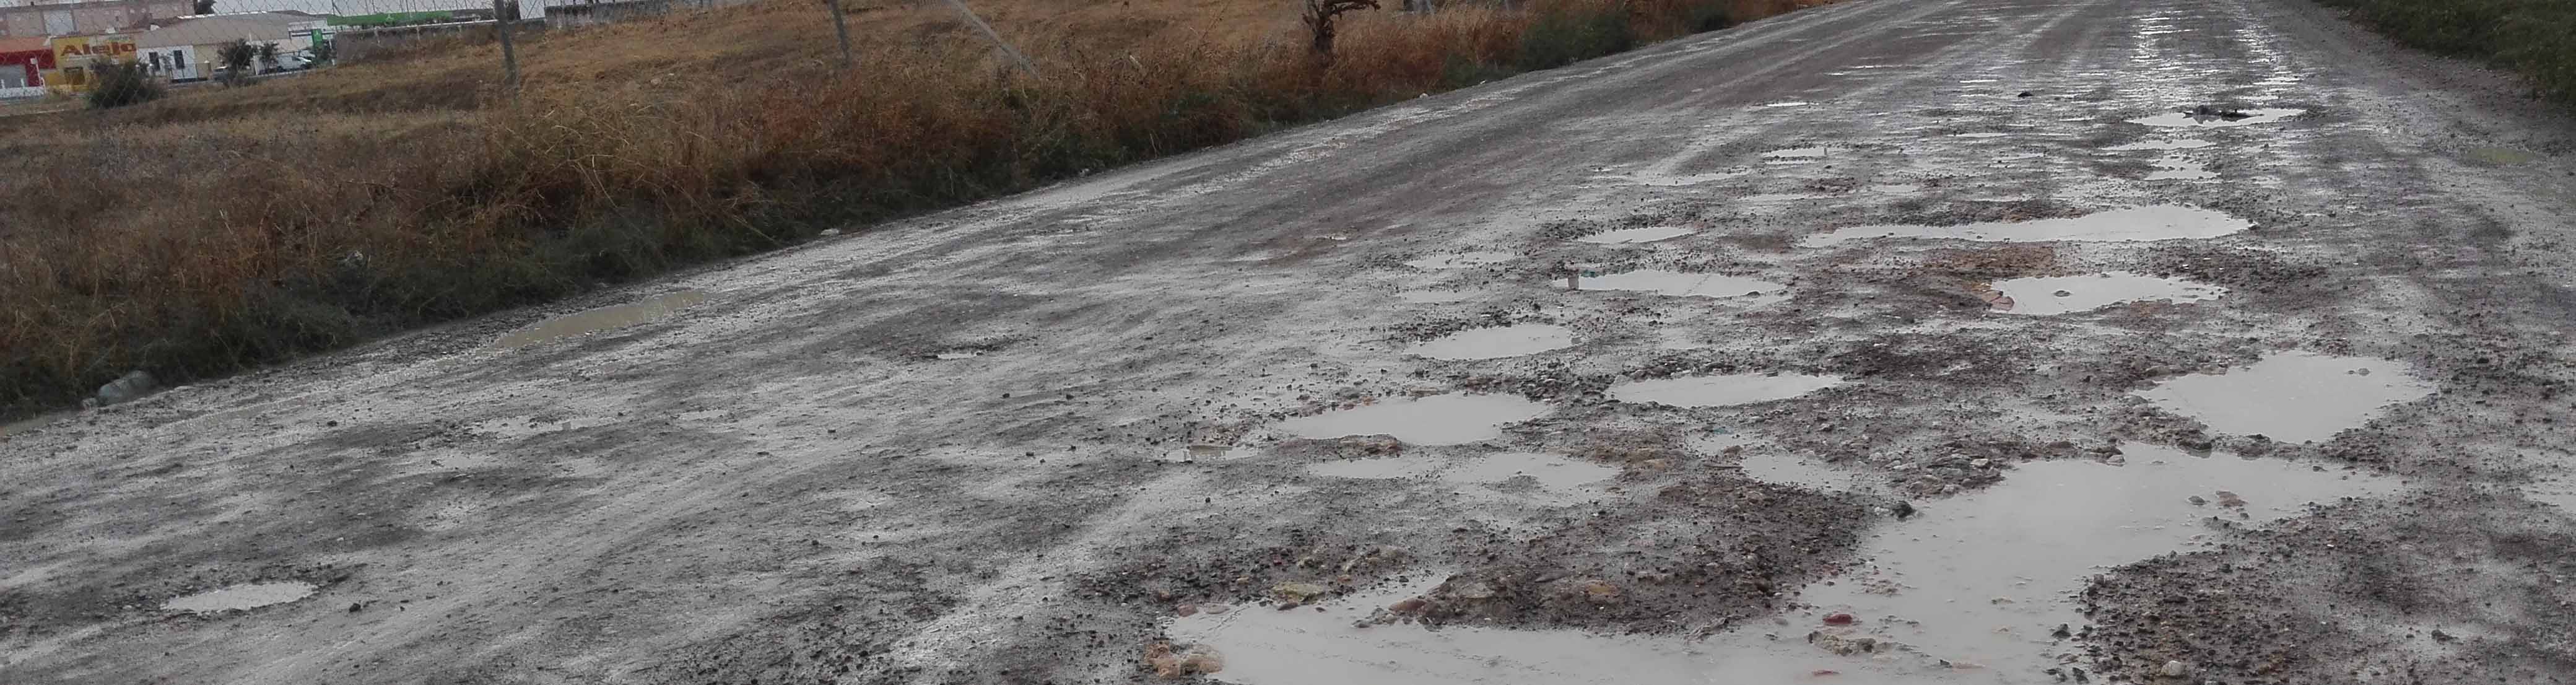 Con las lluvias, el camino de Molares se convierte en una vía impracticable